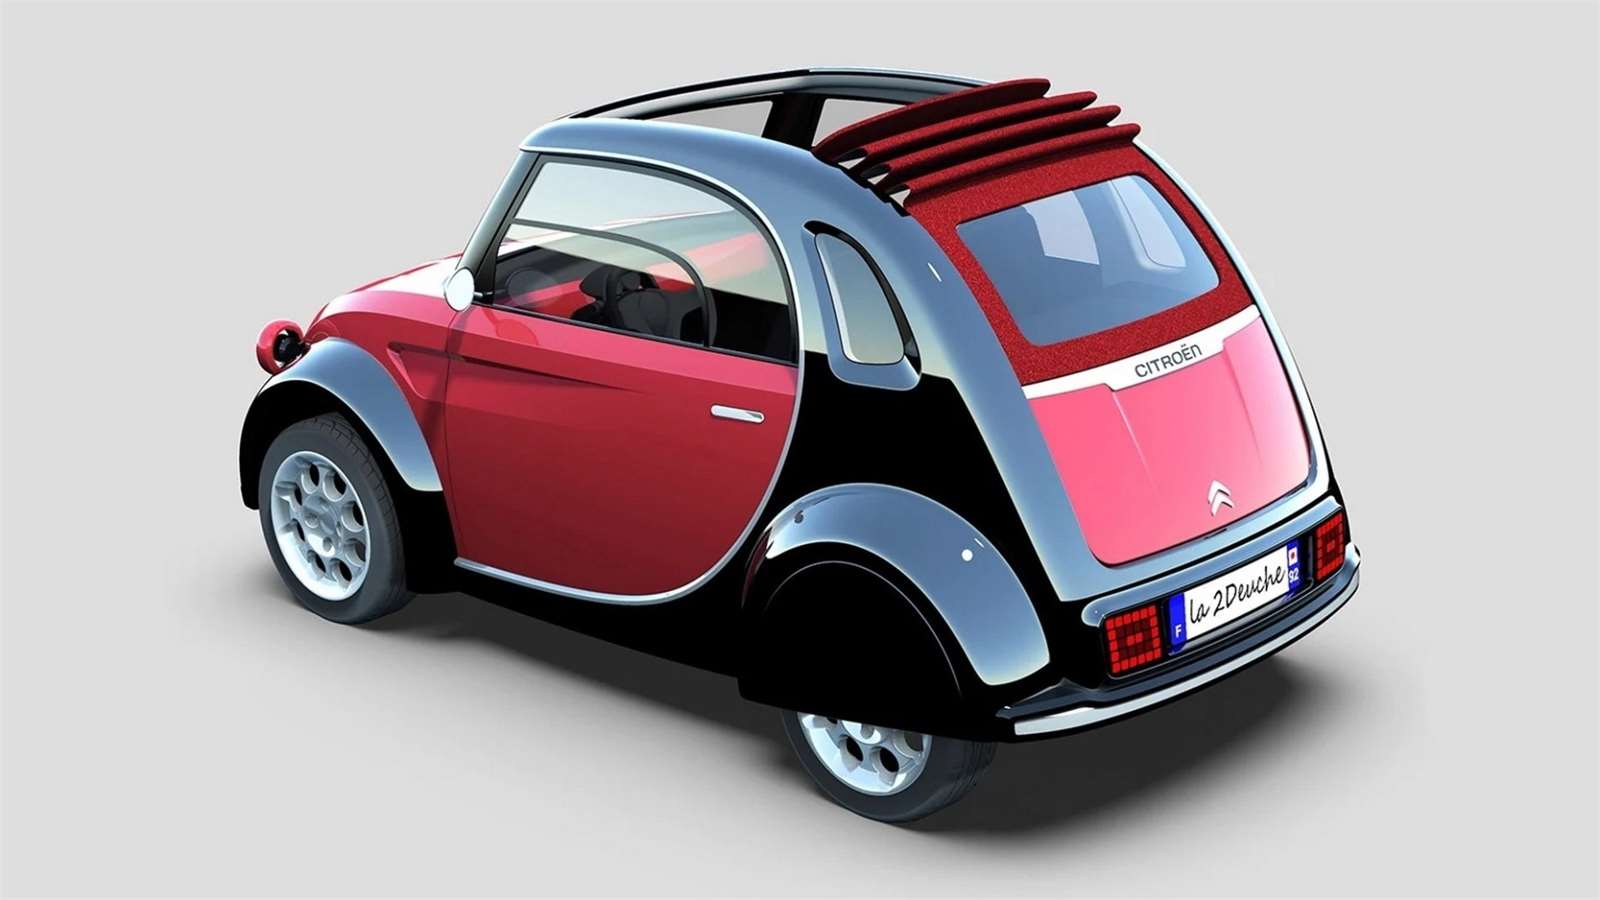 Citroën 2 Deuche Concept, vista 3/4 traseira com teto aberto